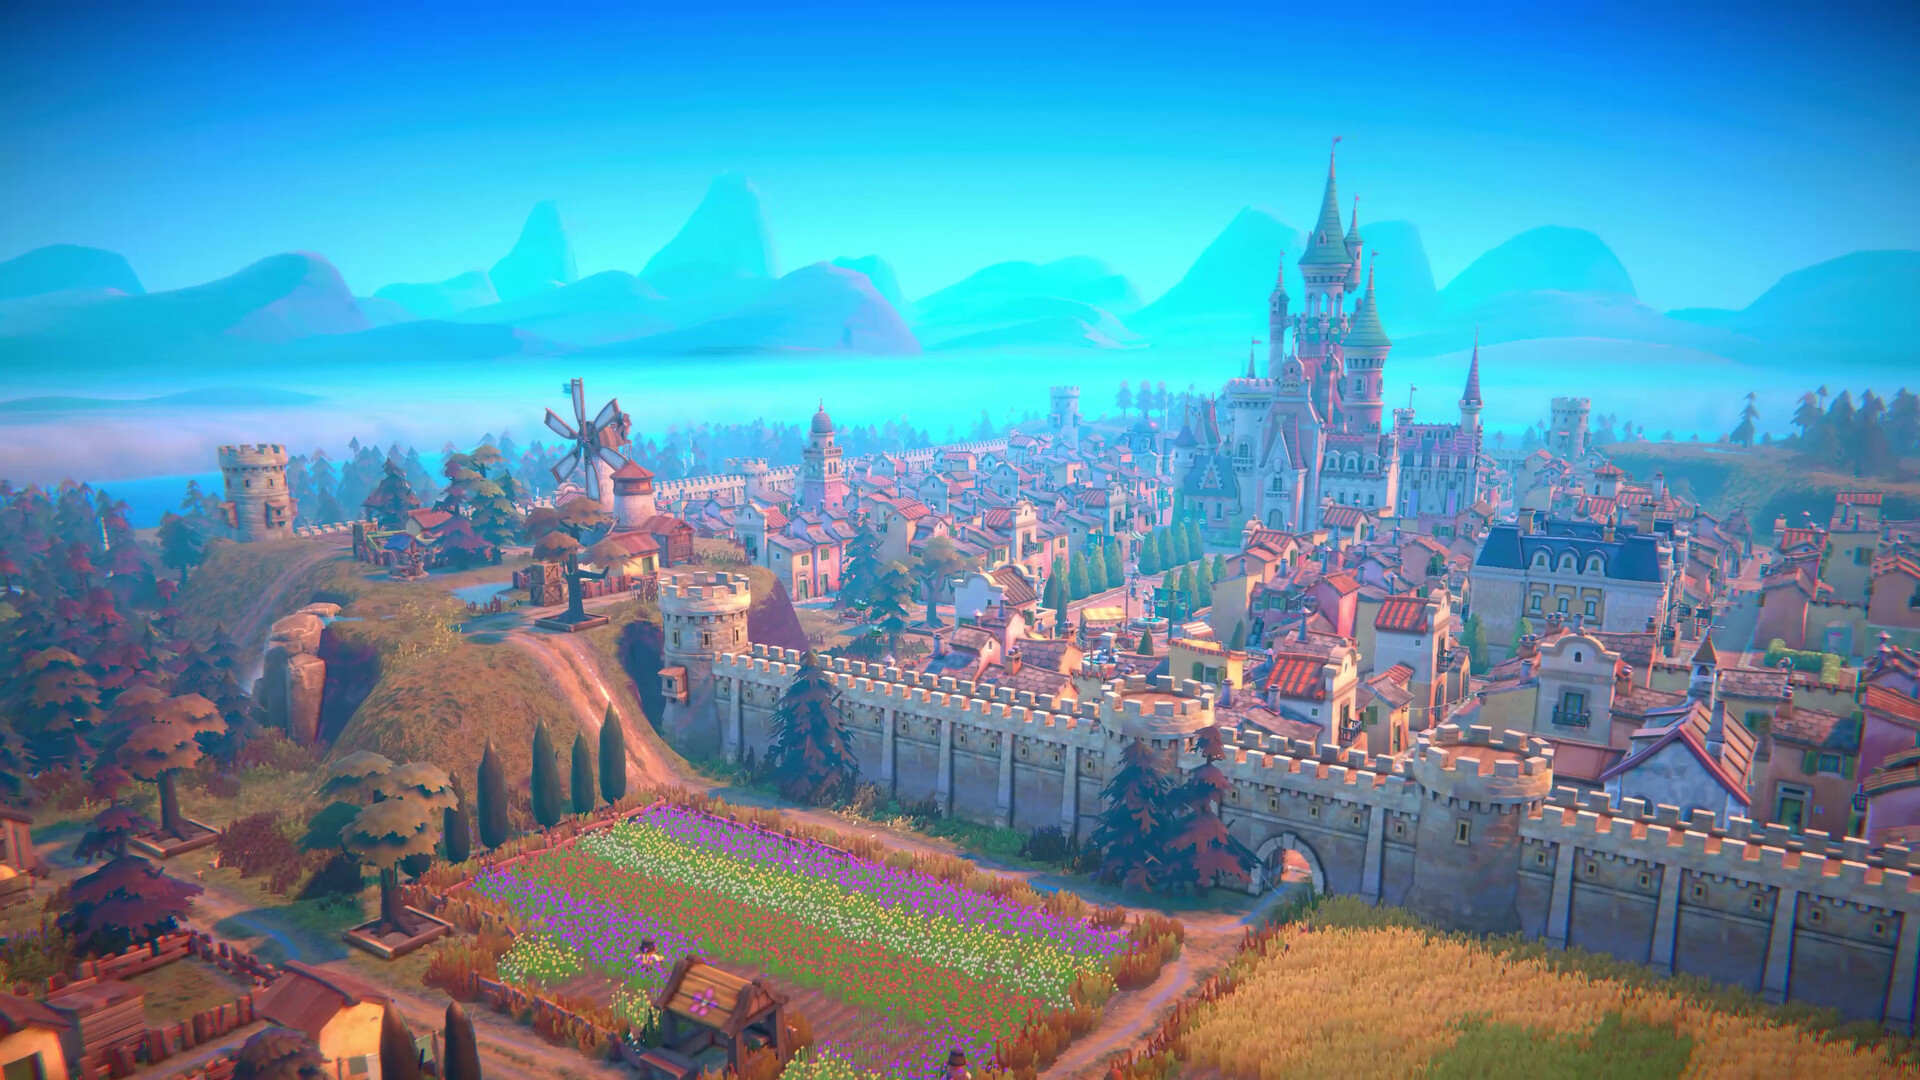 A fantasy village